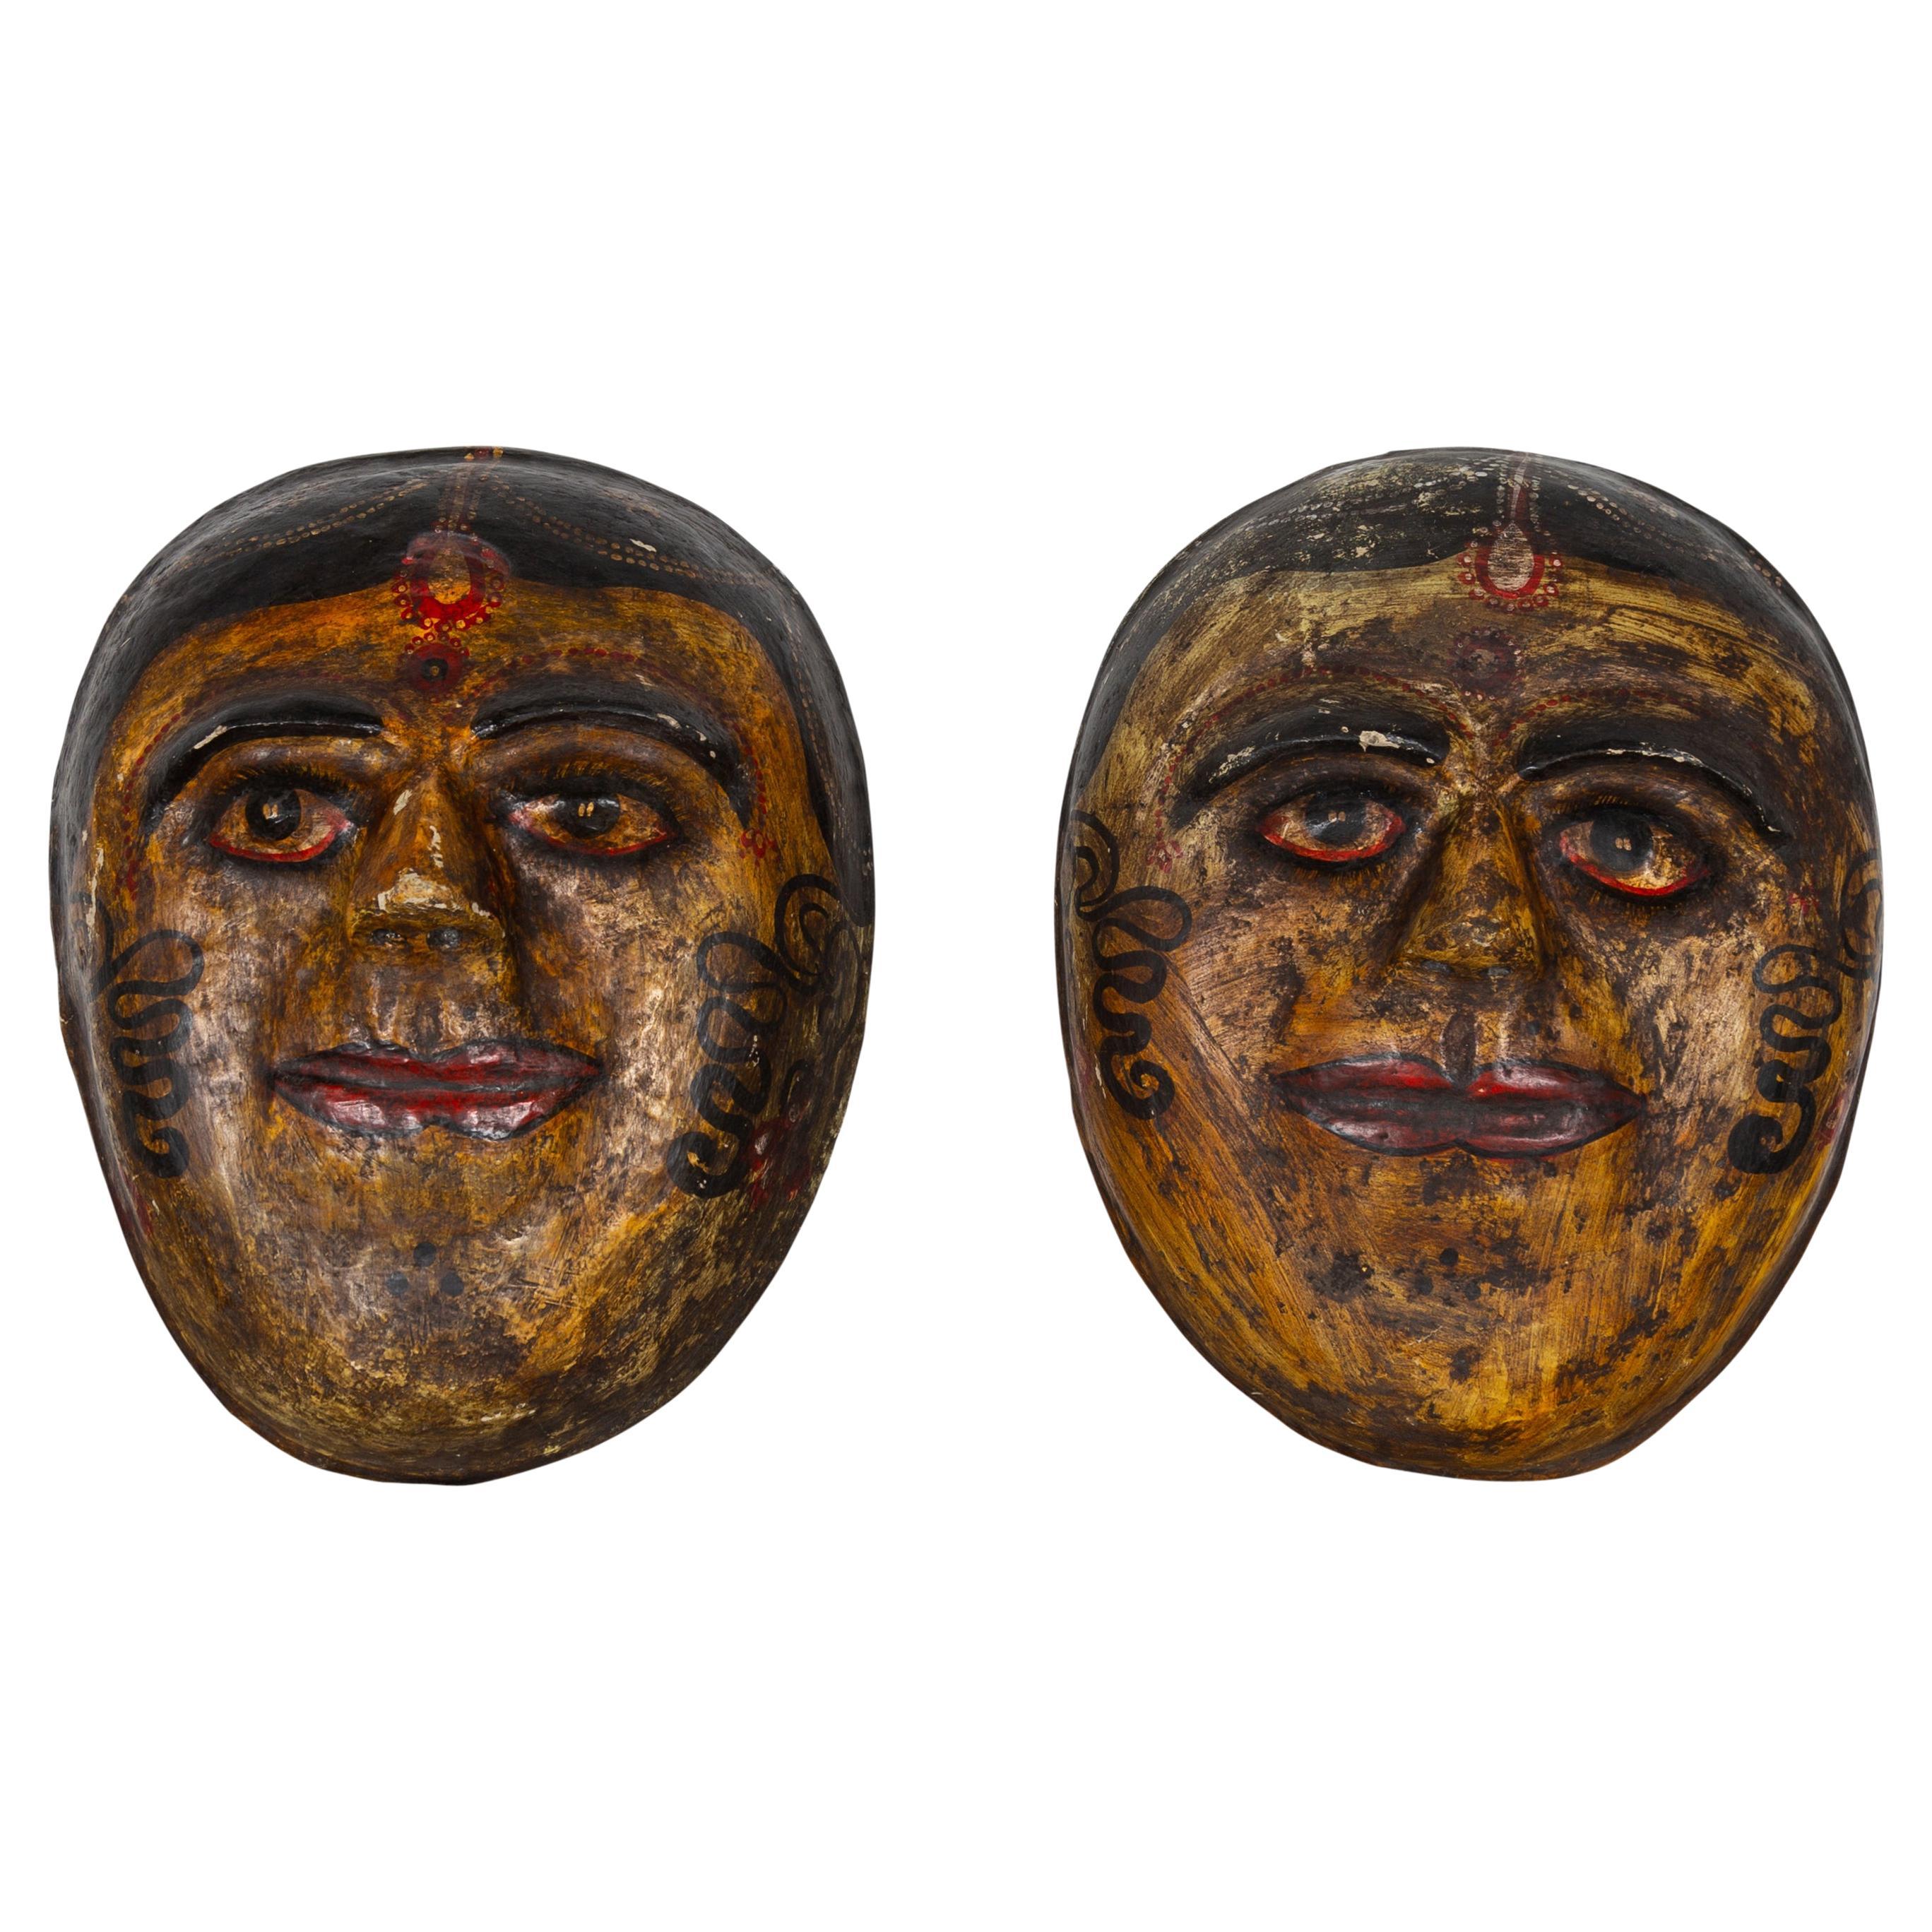 Deux masques indiens anciens de mariées en papier mâché peints à la main représentant des visages